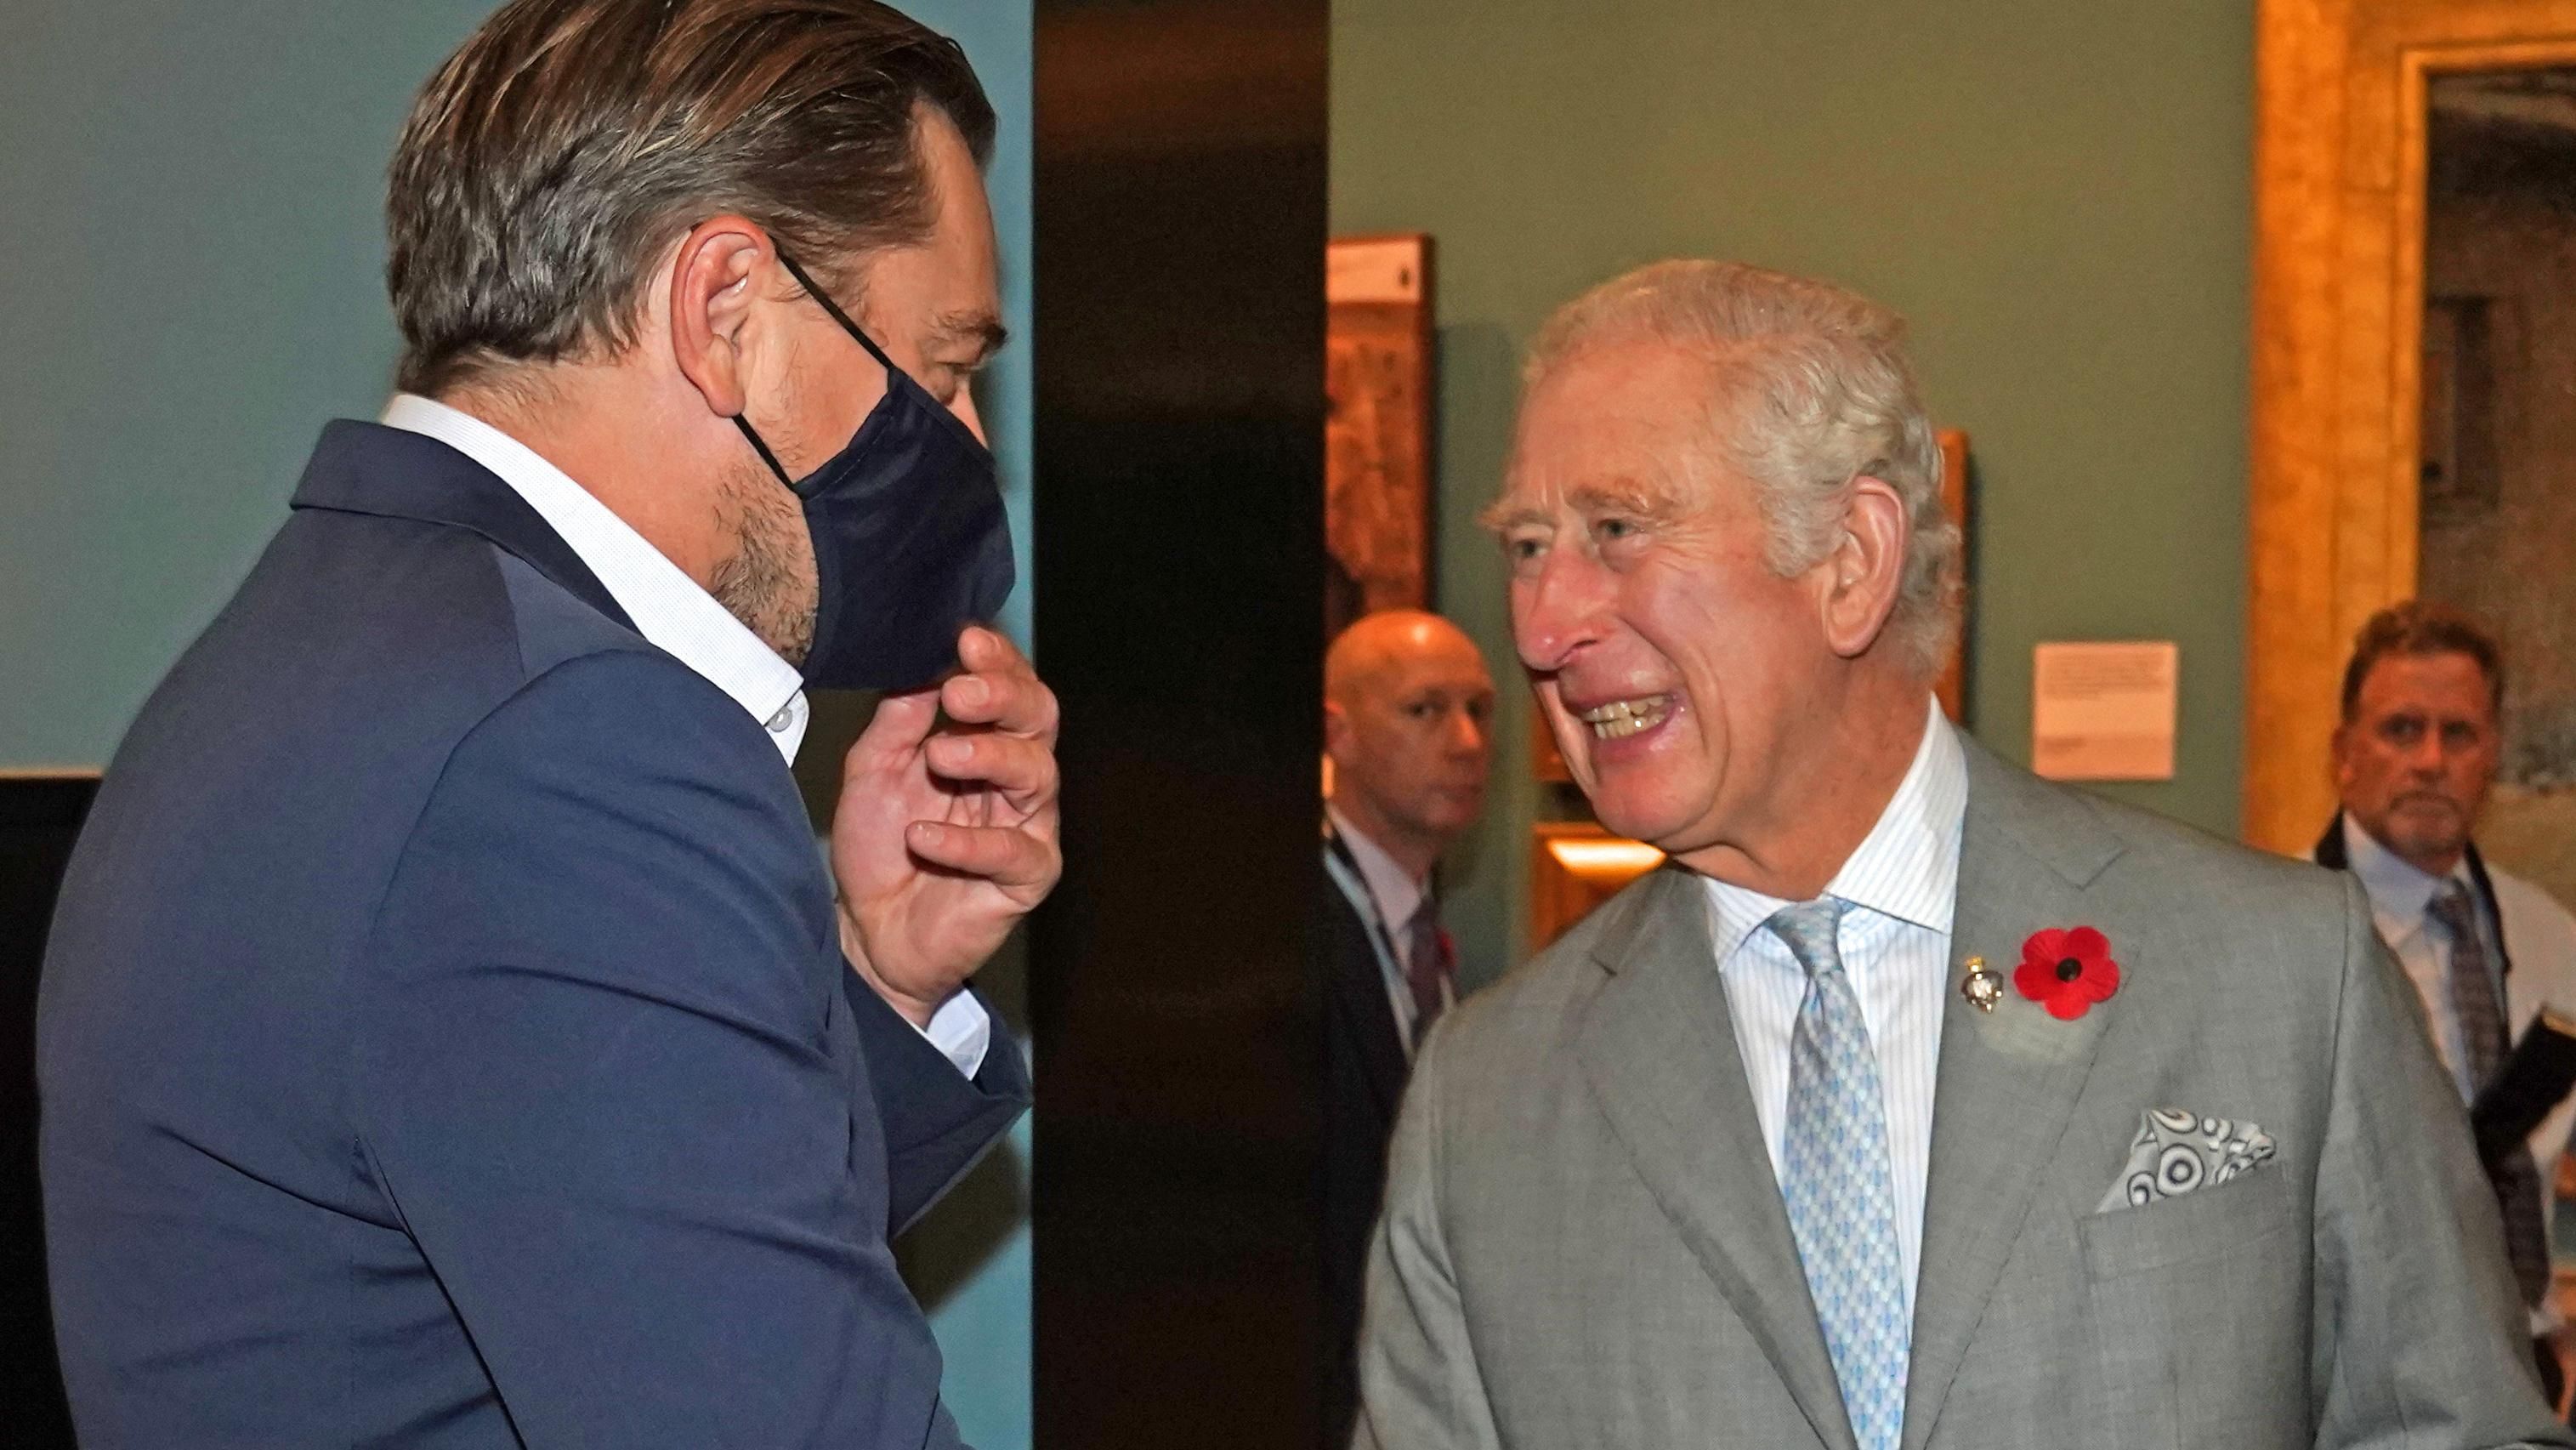 Принц Чарльз расплылся в улыбке, когда встретил Ди Каприо в Глазго: потешные фото